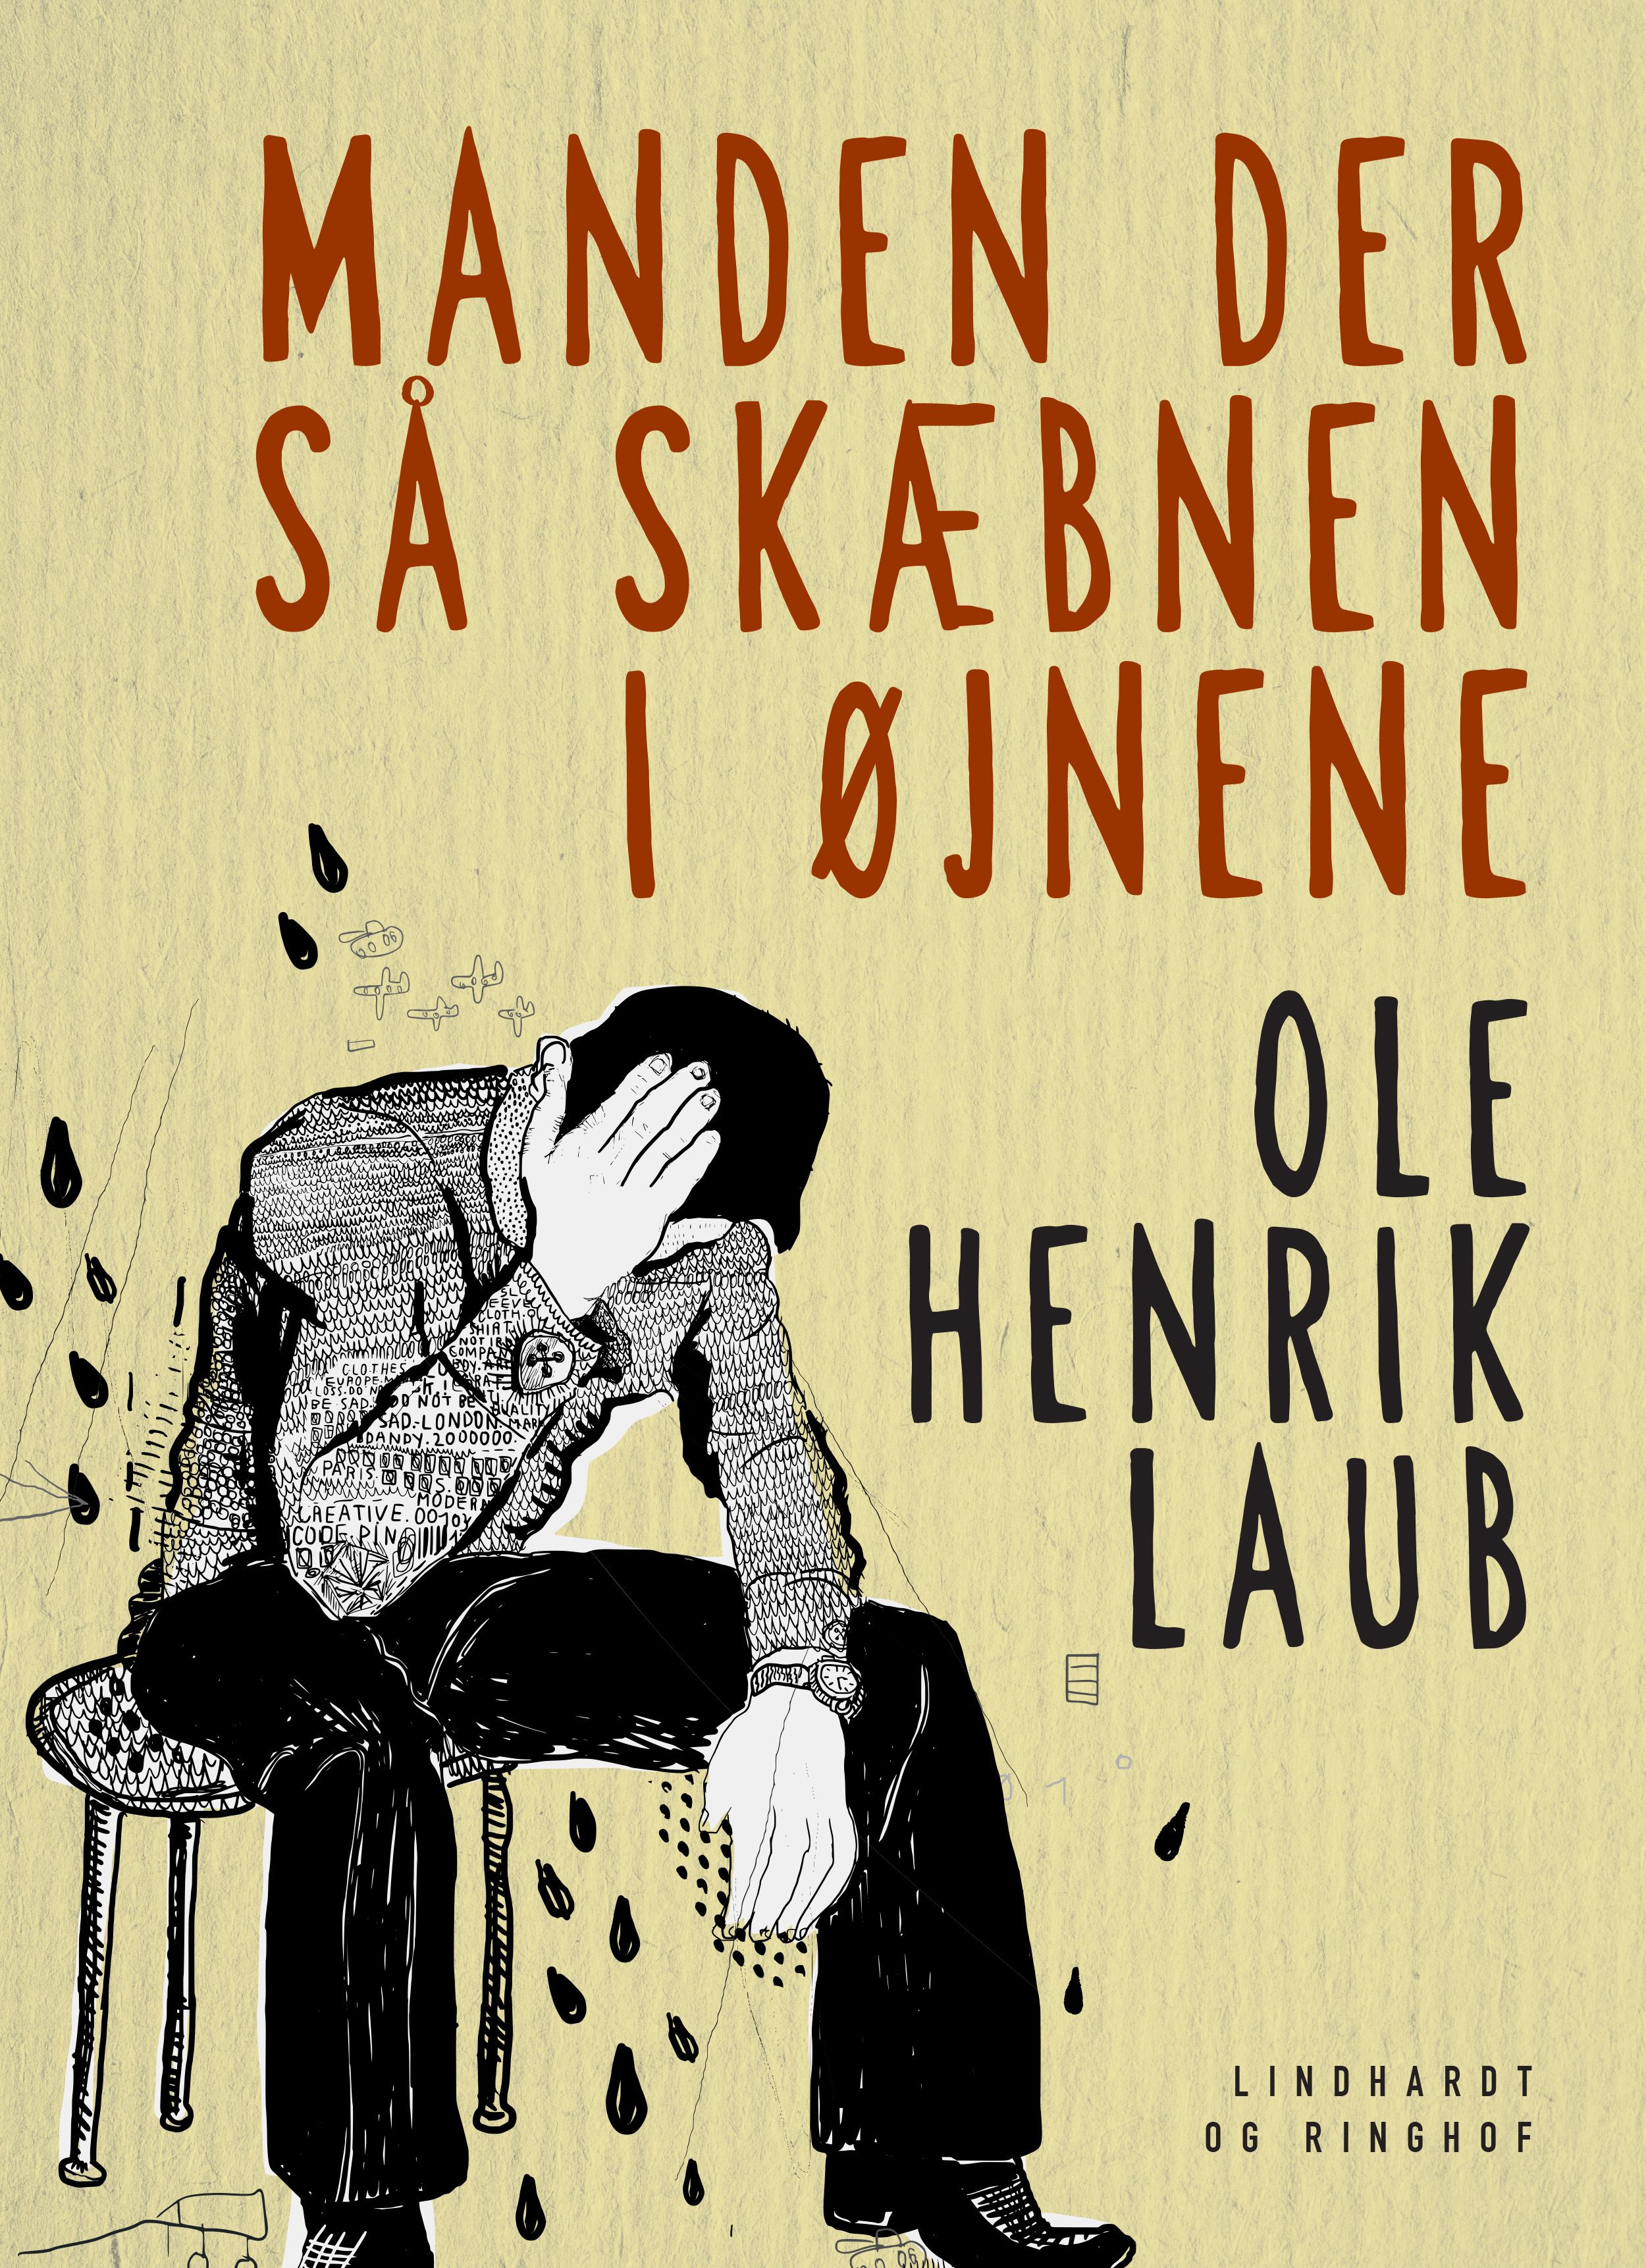 Manden der så skæbnen i øjnene, lydbog af Ole Henrik Laub